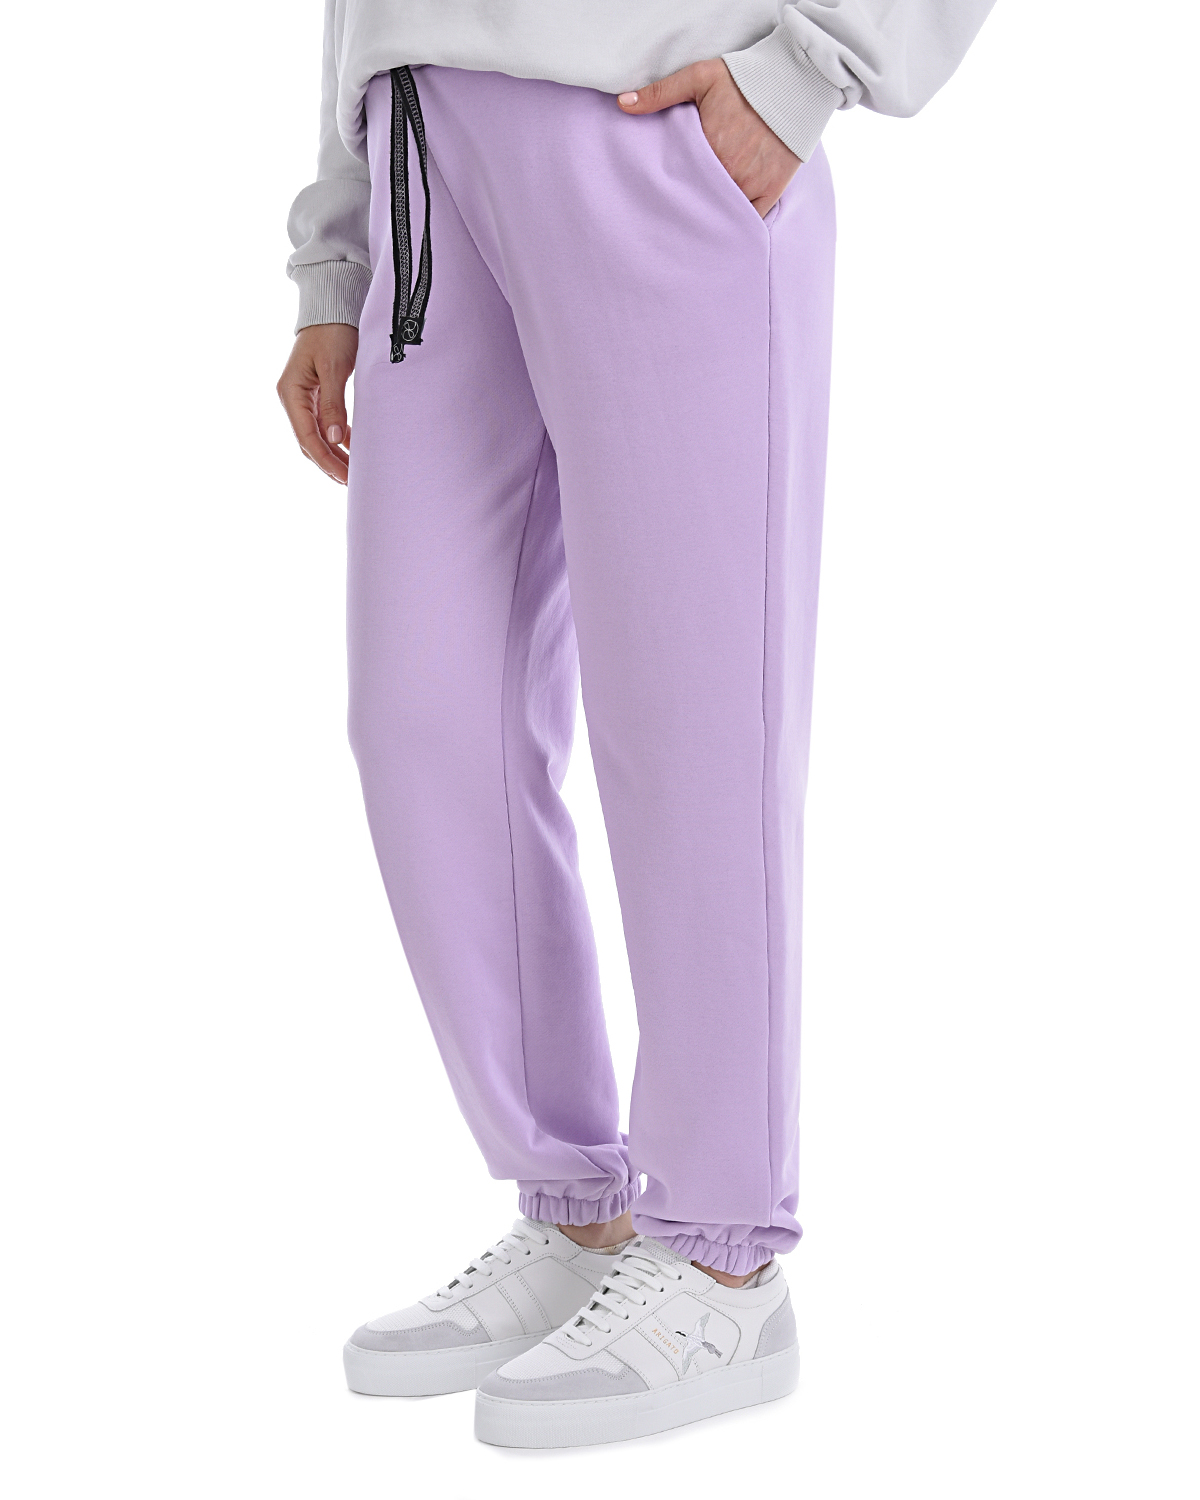 Сиреневые трикотажные брюки Dan Maralex, размер 42, цвет сиреневый - фото 7